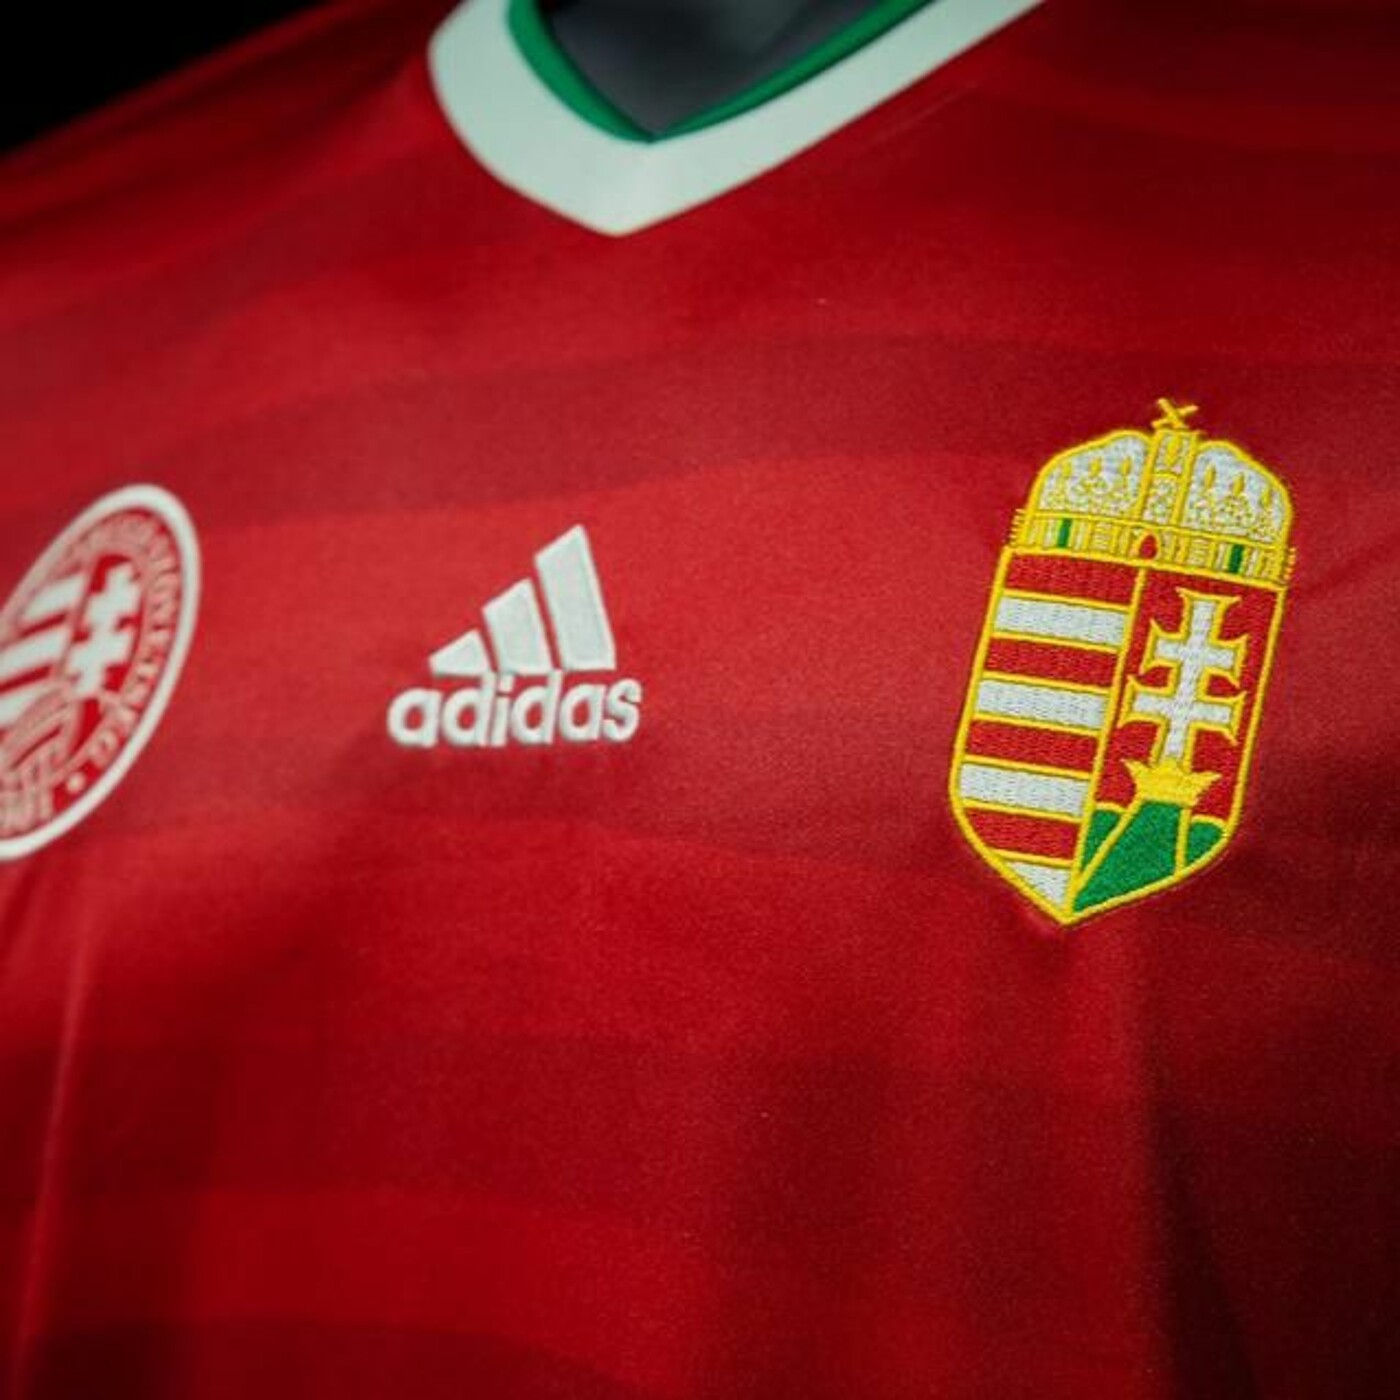 352: a magyar foci podcast: Jöjj, Nemzetek Ligája!